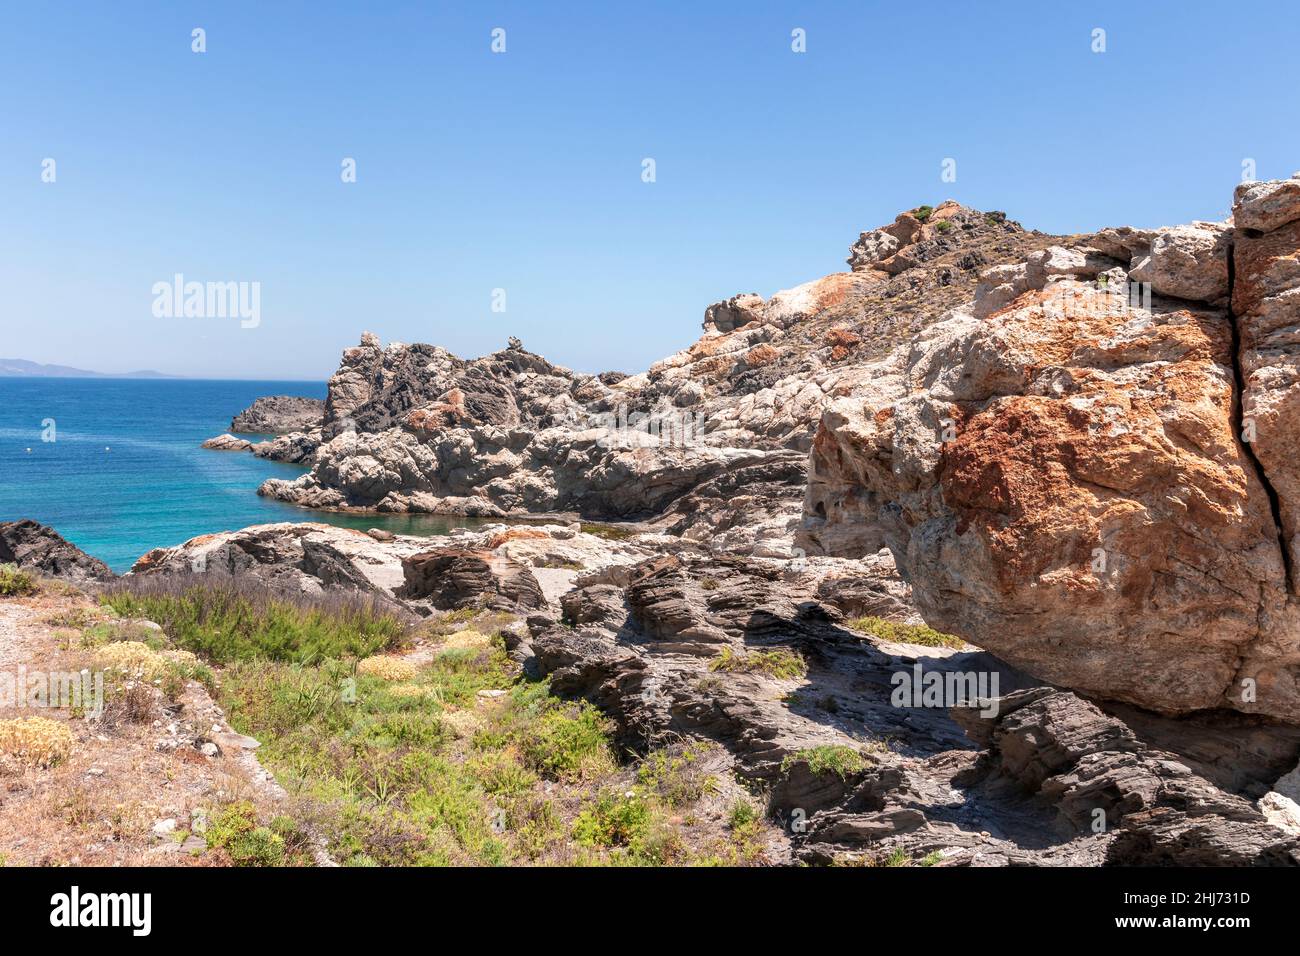 rocky cove at cap de creus on the costa brava in northern spain Stock Photo